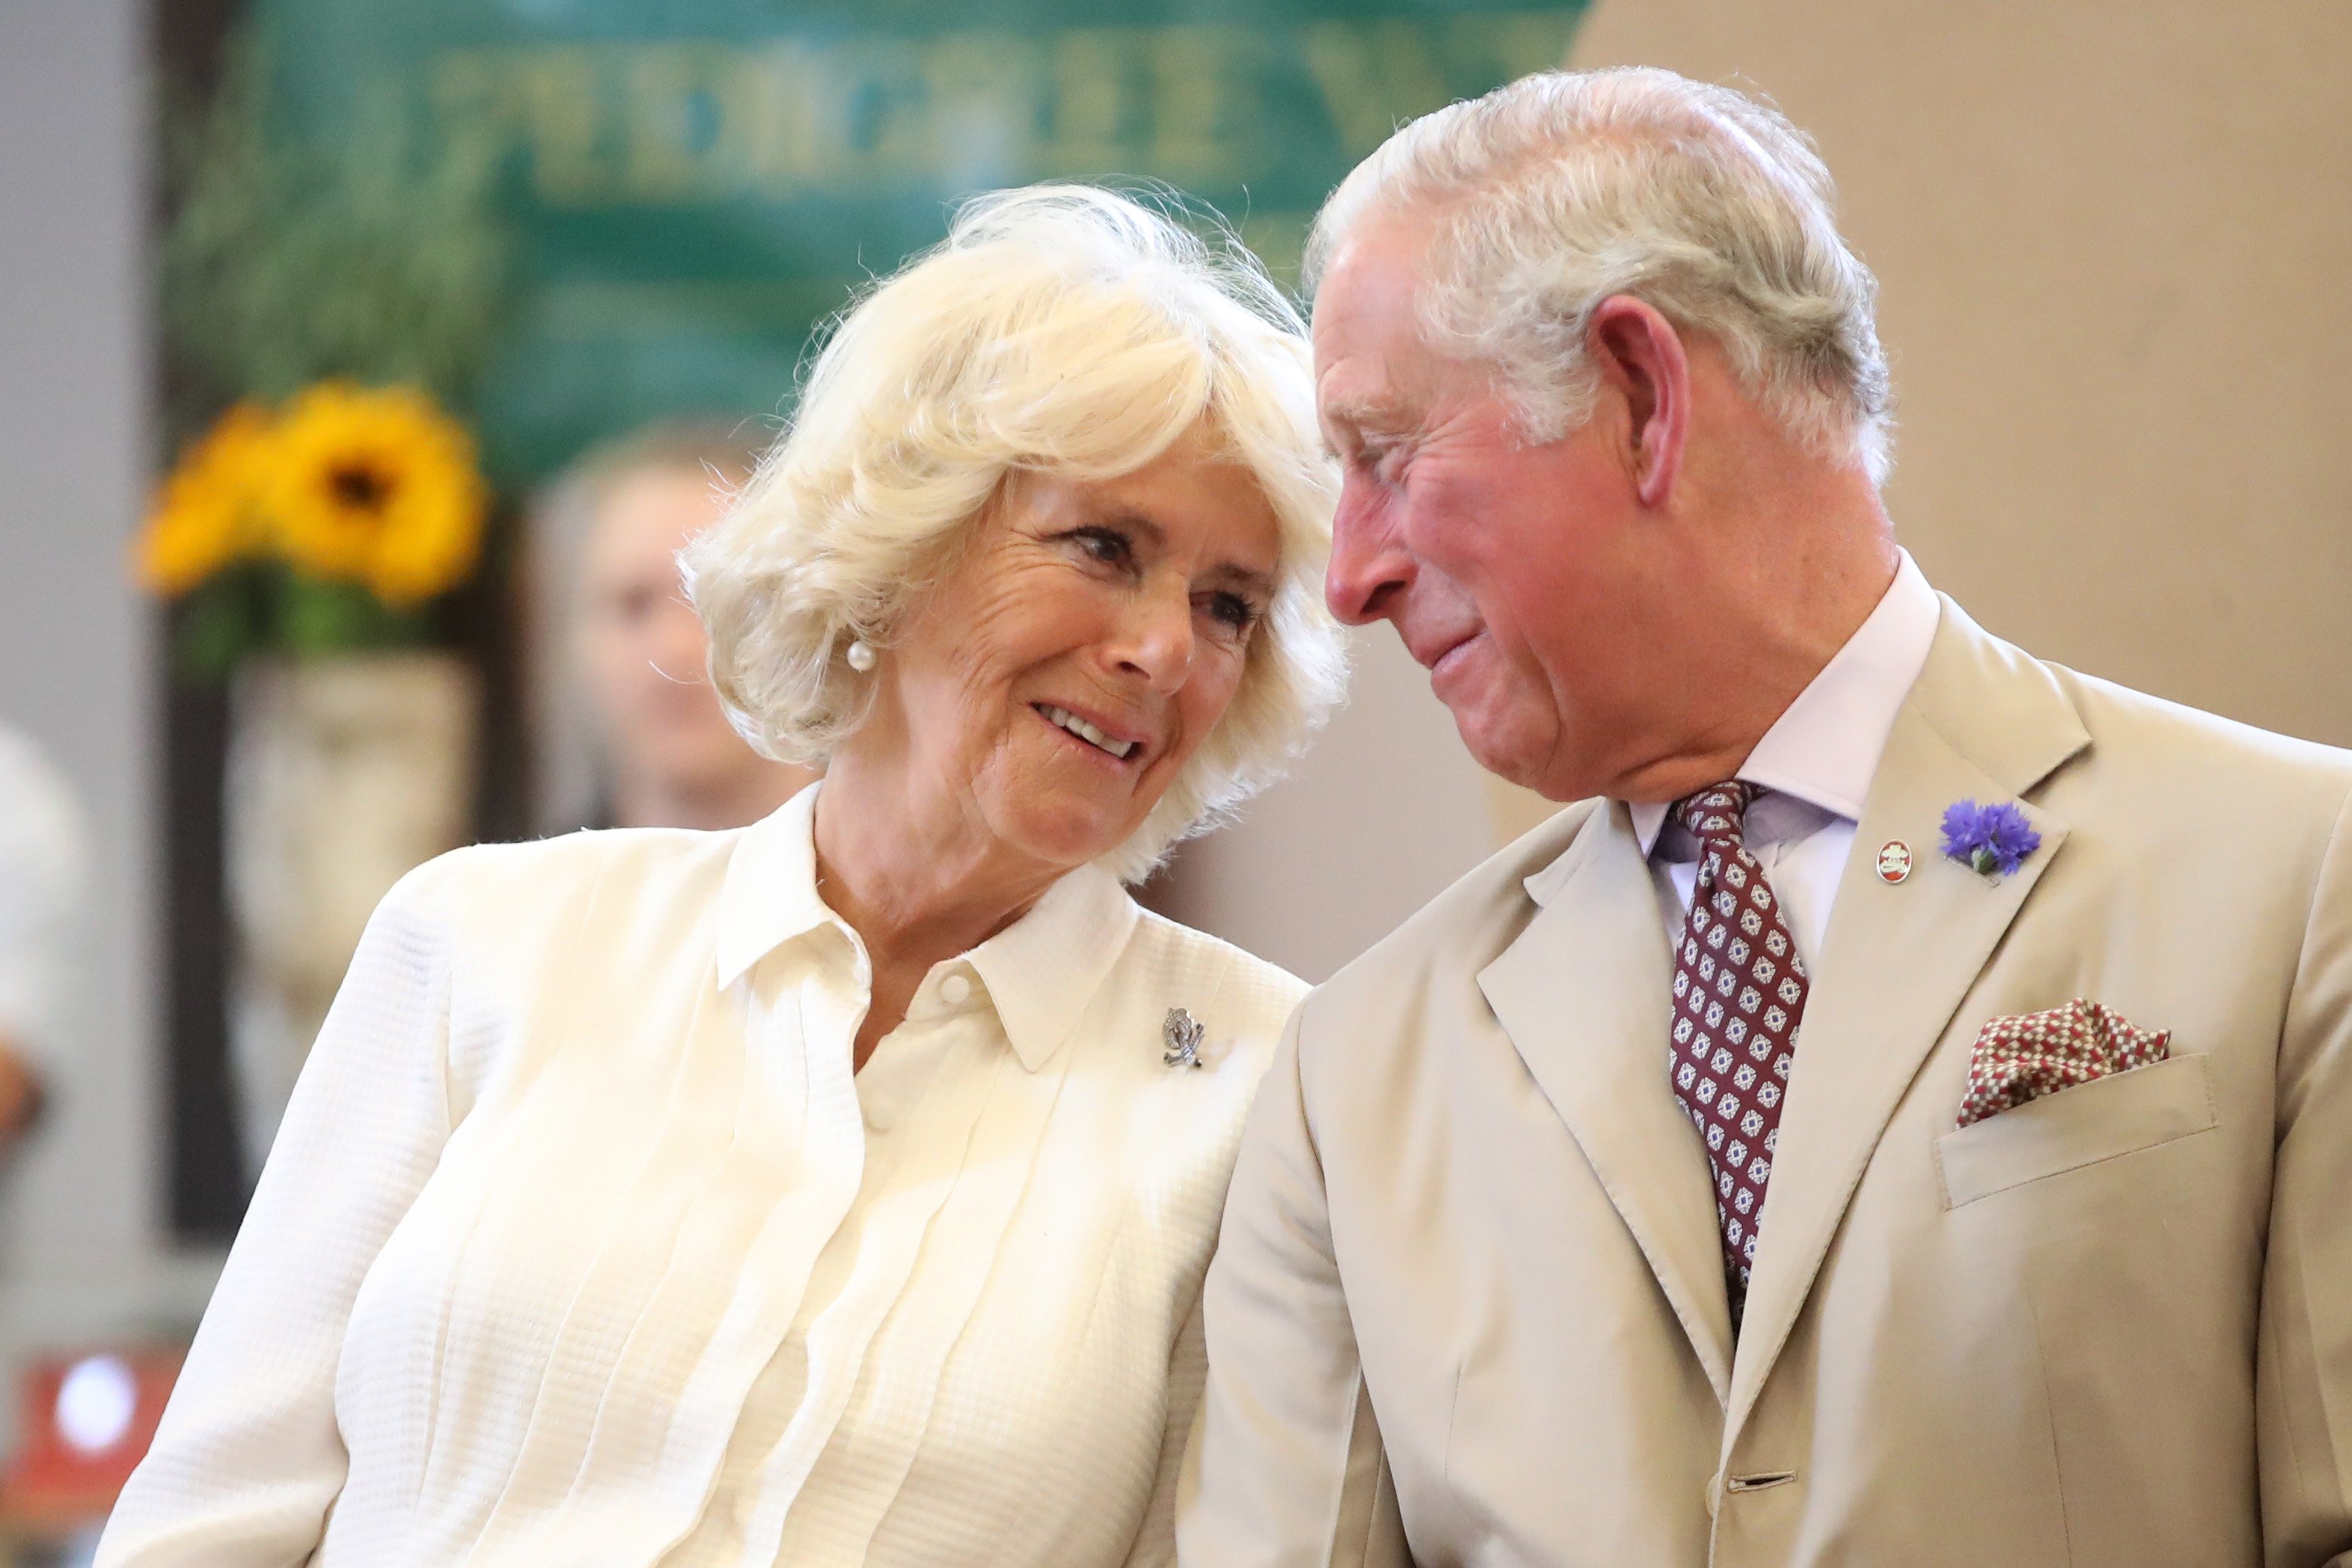 Königingemahlin Camilla und König Charles III. in Wales 2018. | Quelle: Getty Images